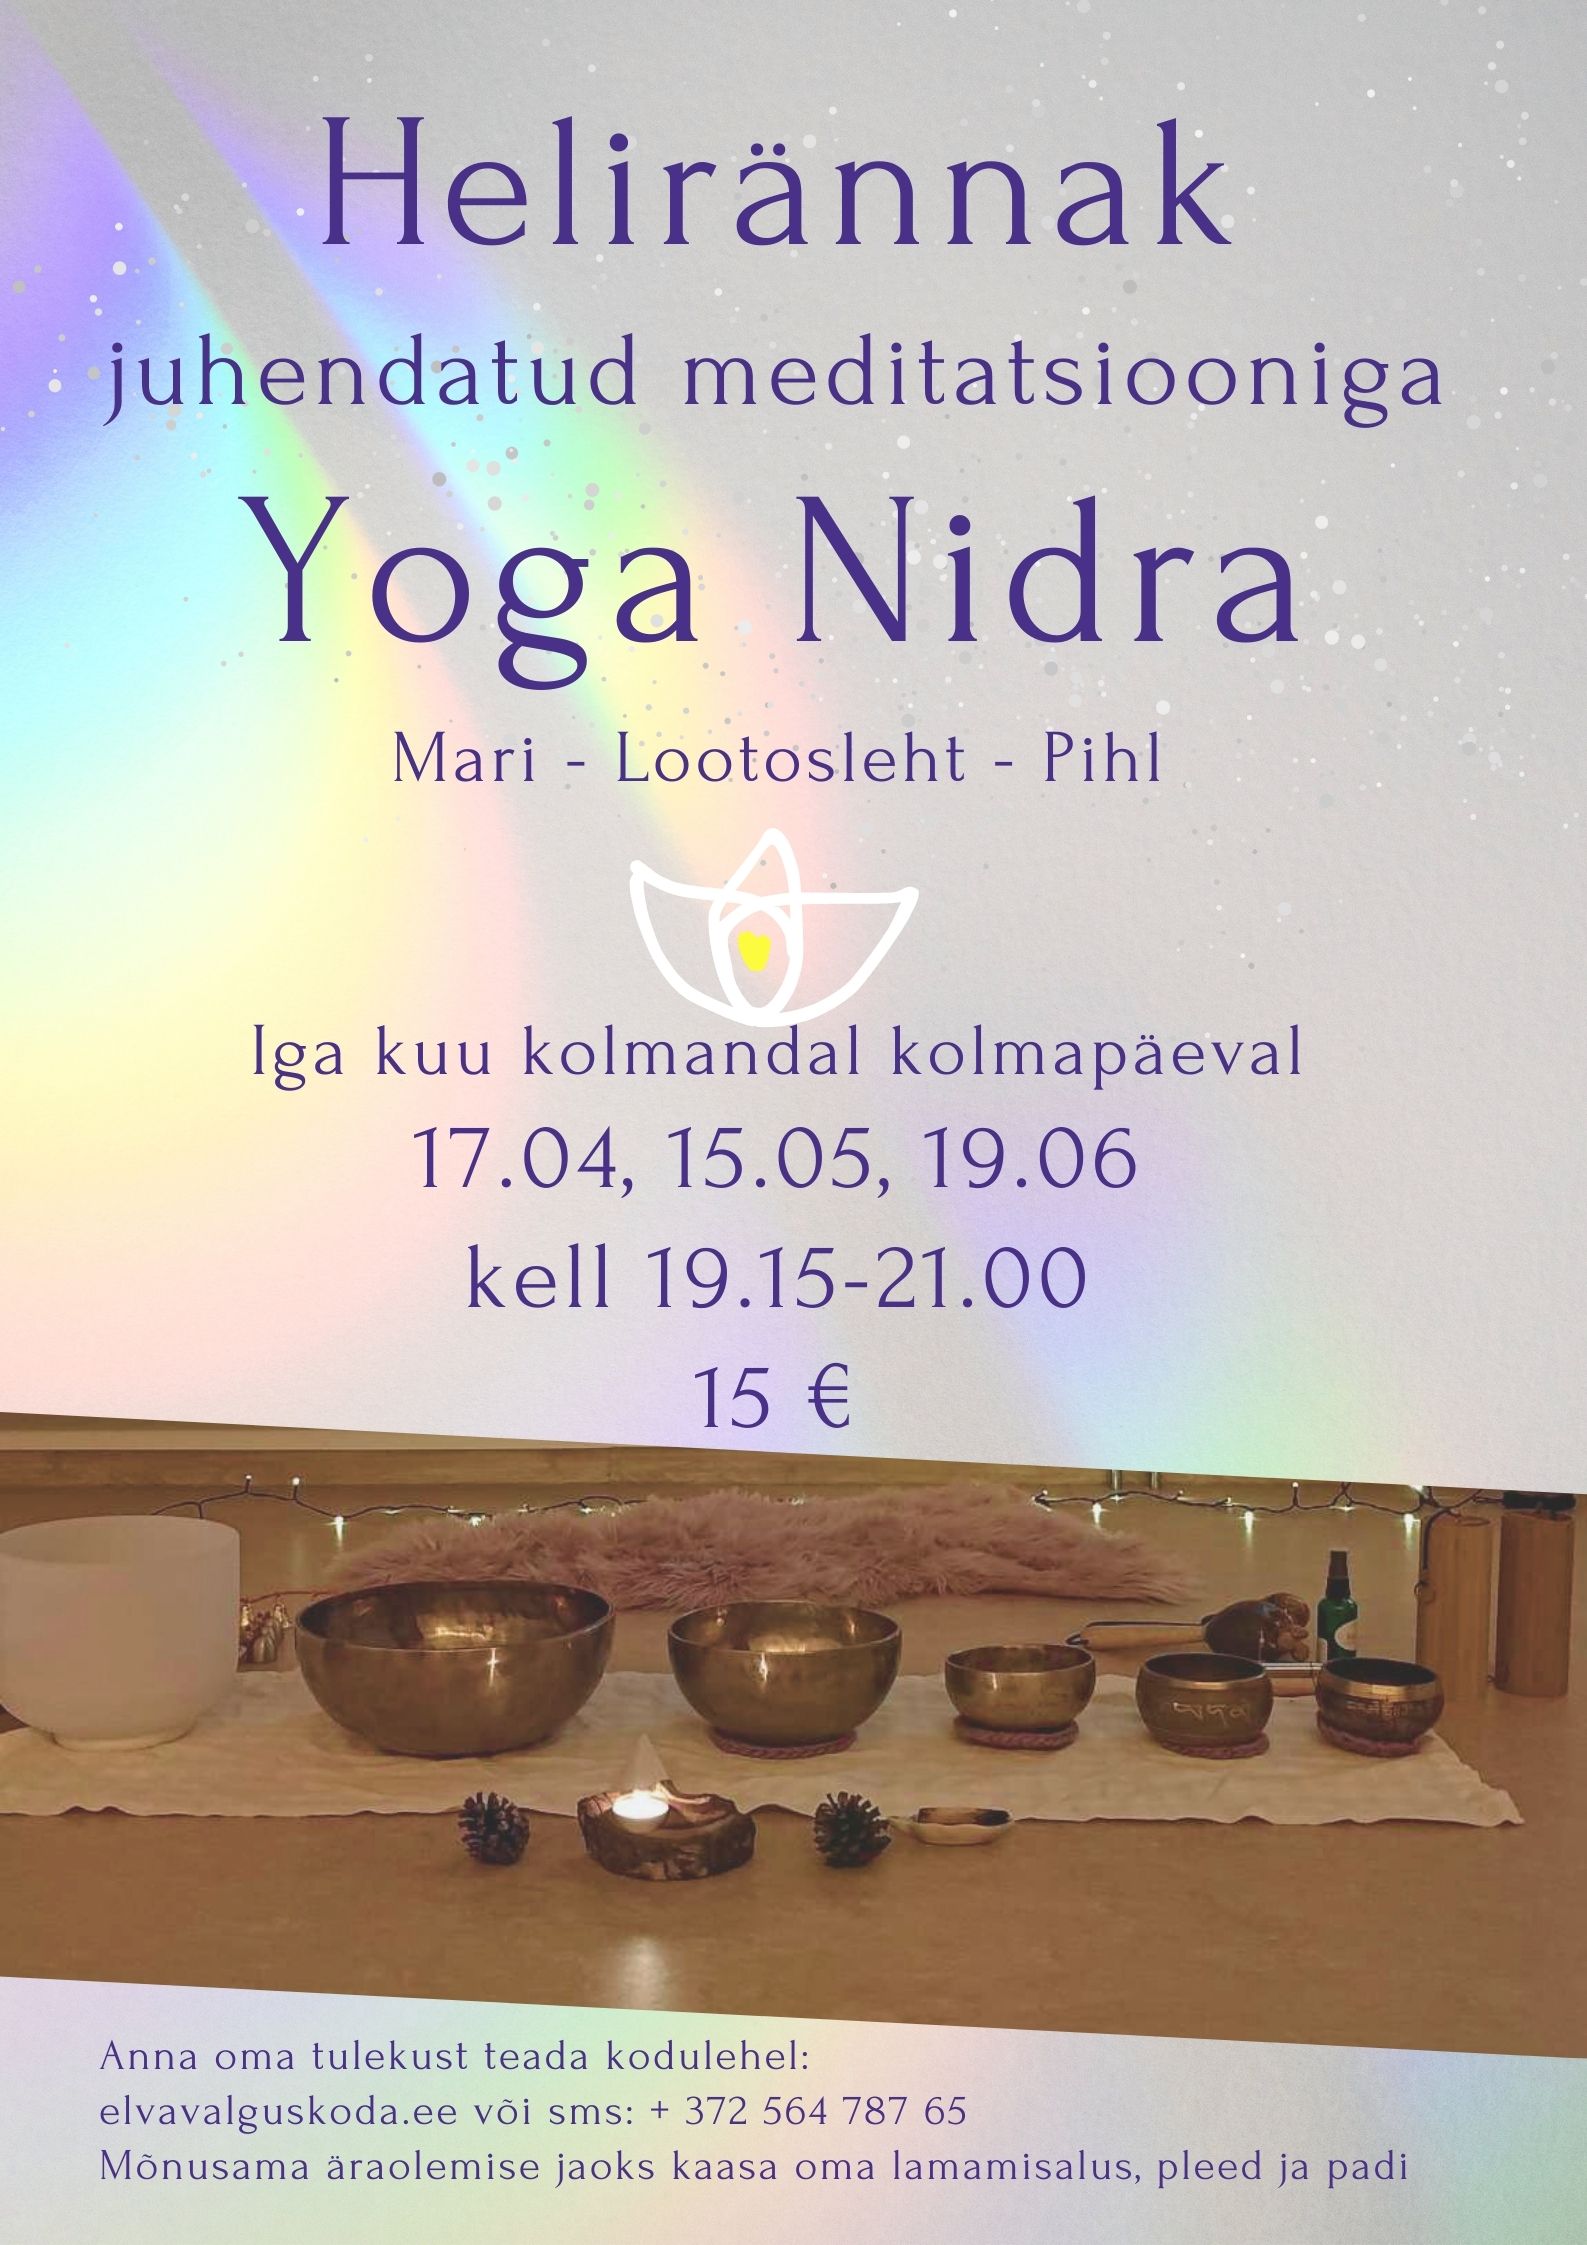 Helirännak juhendatud meditatsiooniga - Yoga Nidra